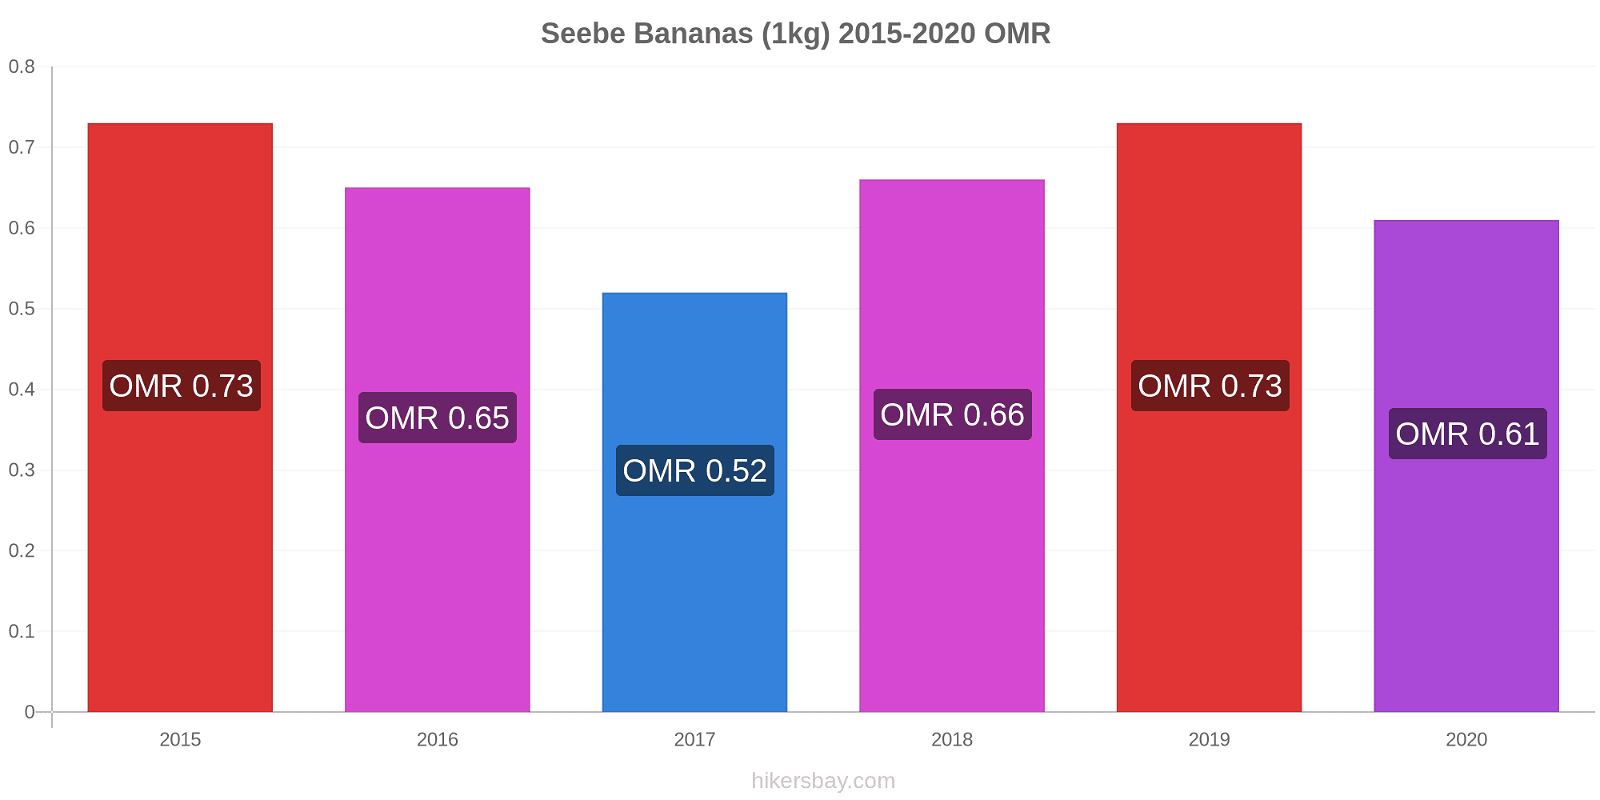 Seebe variação de preço Banana (1kg) hikersbay.com